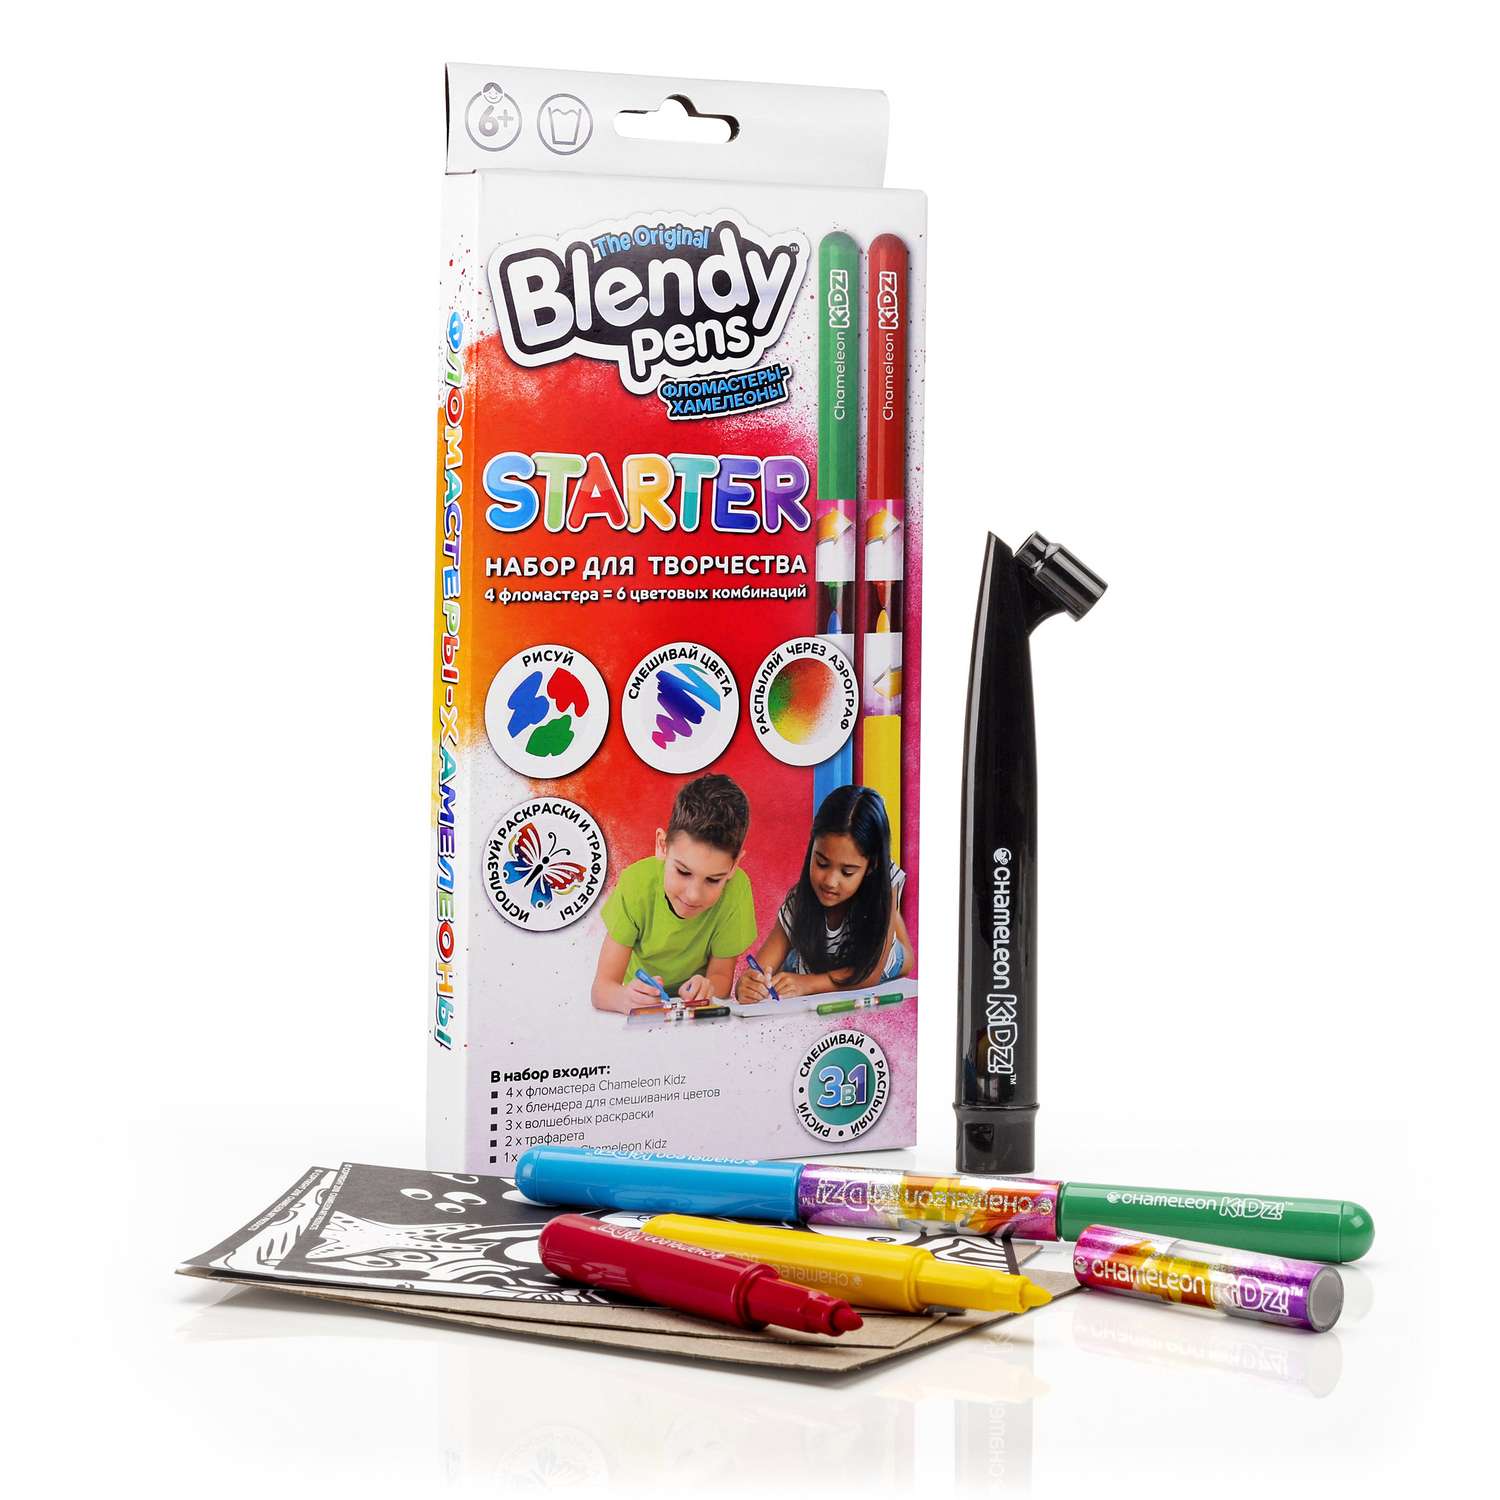 Набор для творчества Blendy pens Фломастеры хамелеоны 4 штуки с аэрографом - фото 2